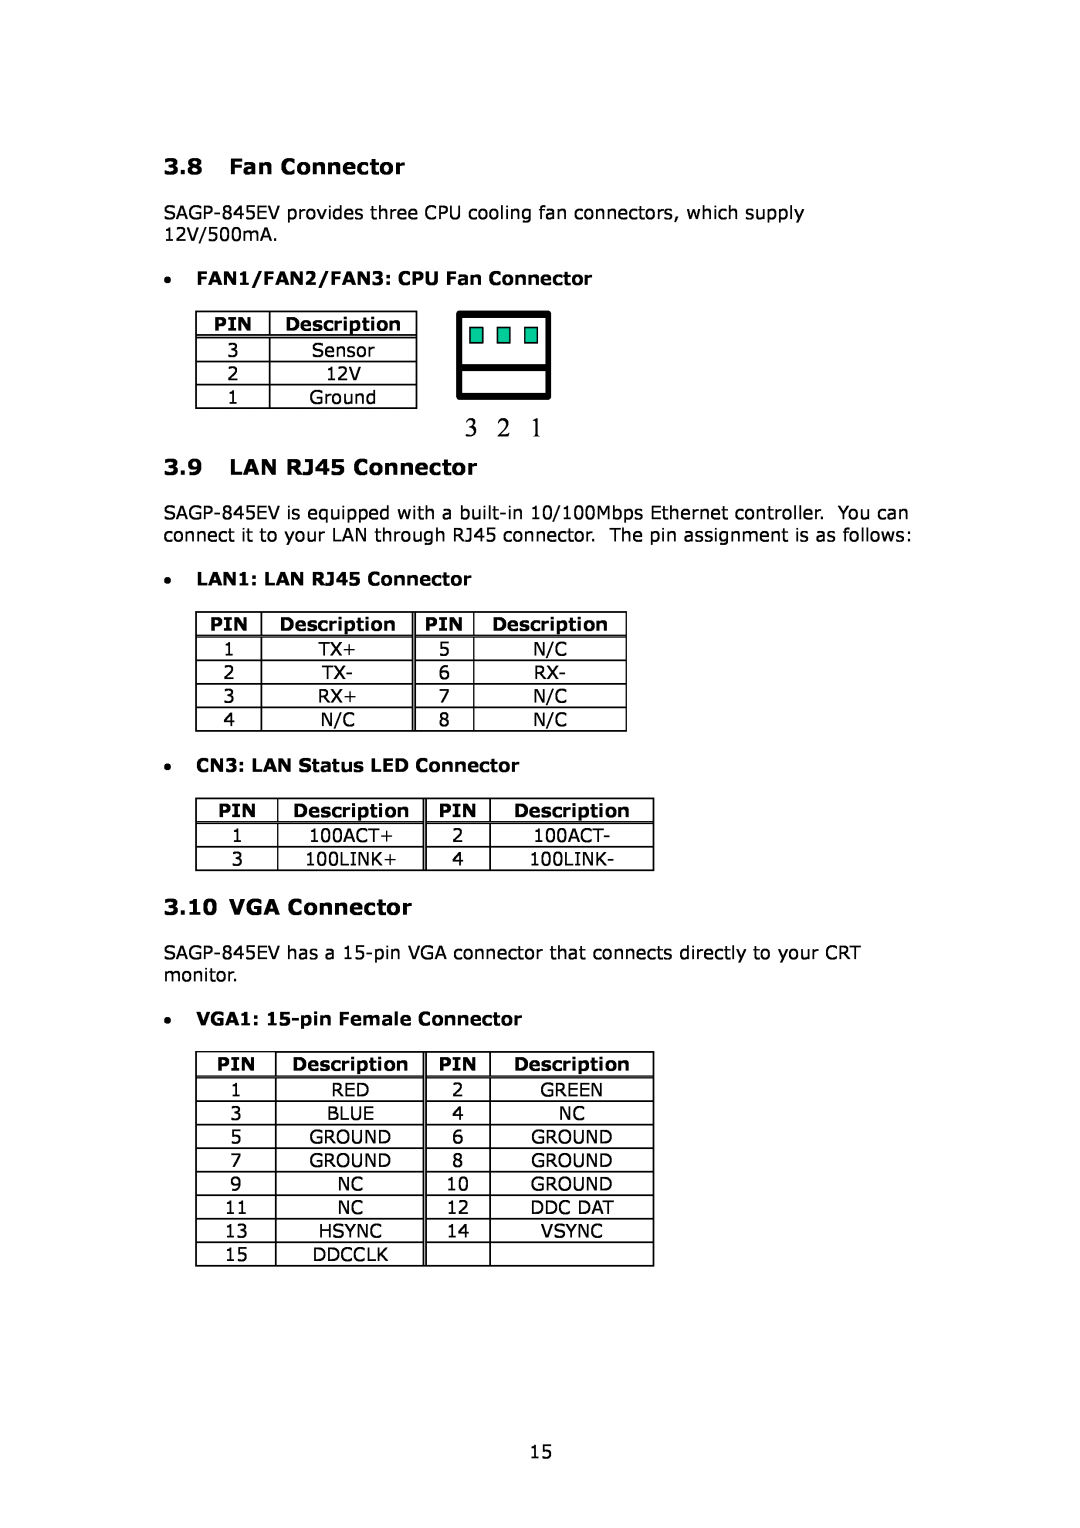 IBM SAGP-845EV user manual LAN RJ45 Connector, VGA Connector, FAN1/FAN2/FAN3 CPU Fan Connector PIN Description 